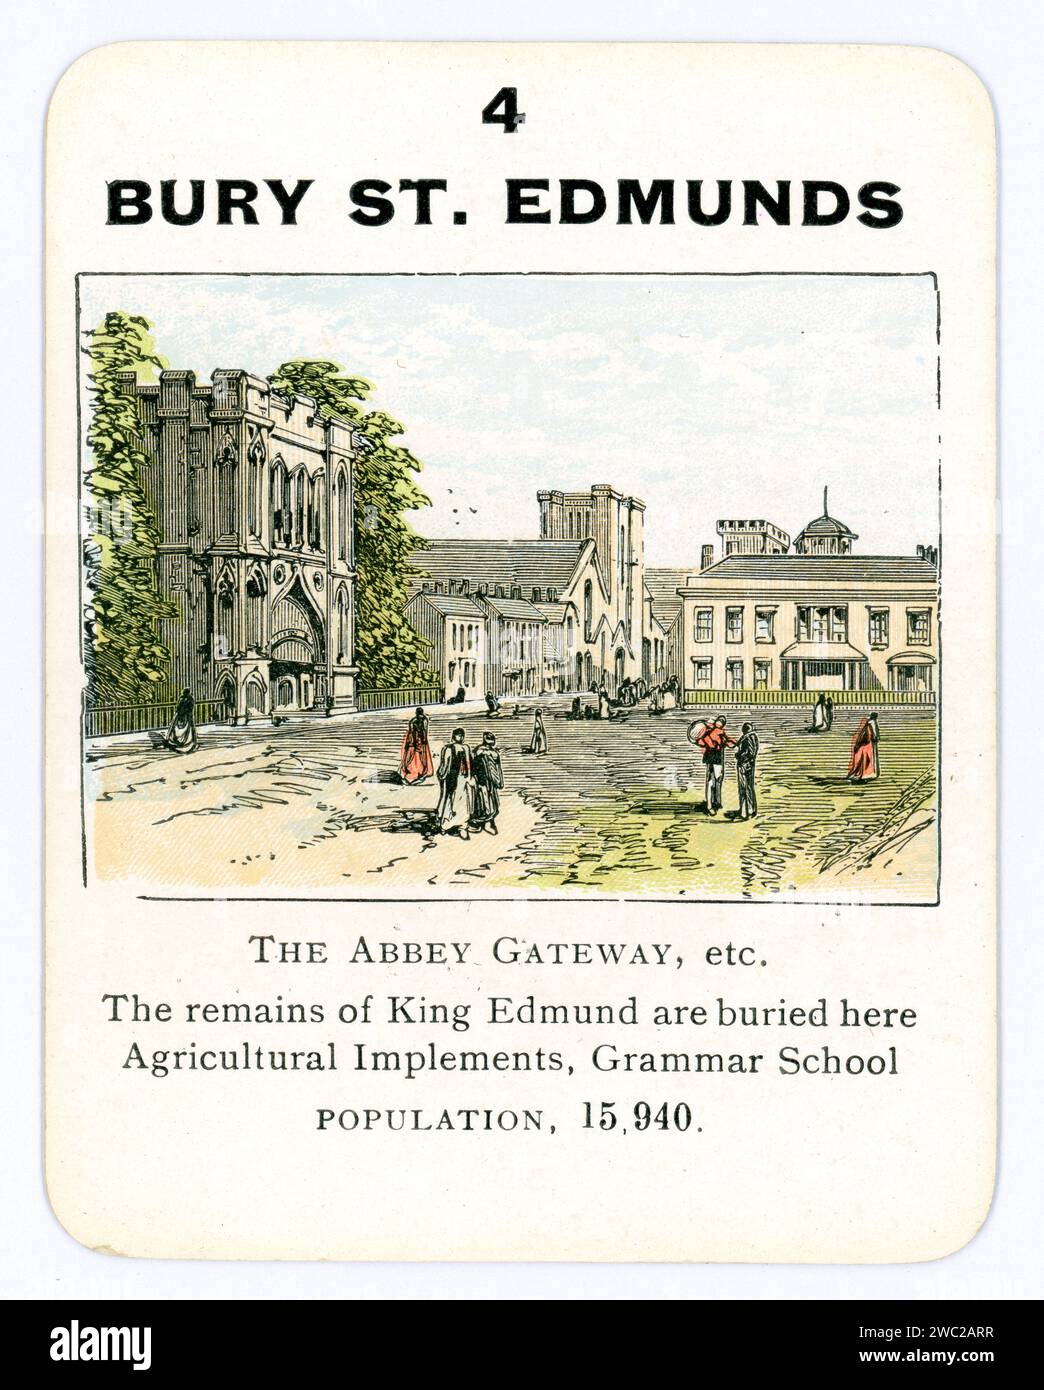 Spielkarte Anfang der 1900er Jahre, farbige Illustration von Bury St. Edmunds Town, Suffolk, England, Großbritannien um 1910er / 1920er Jahre. Stockfoto